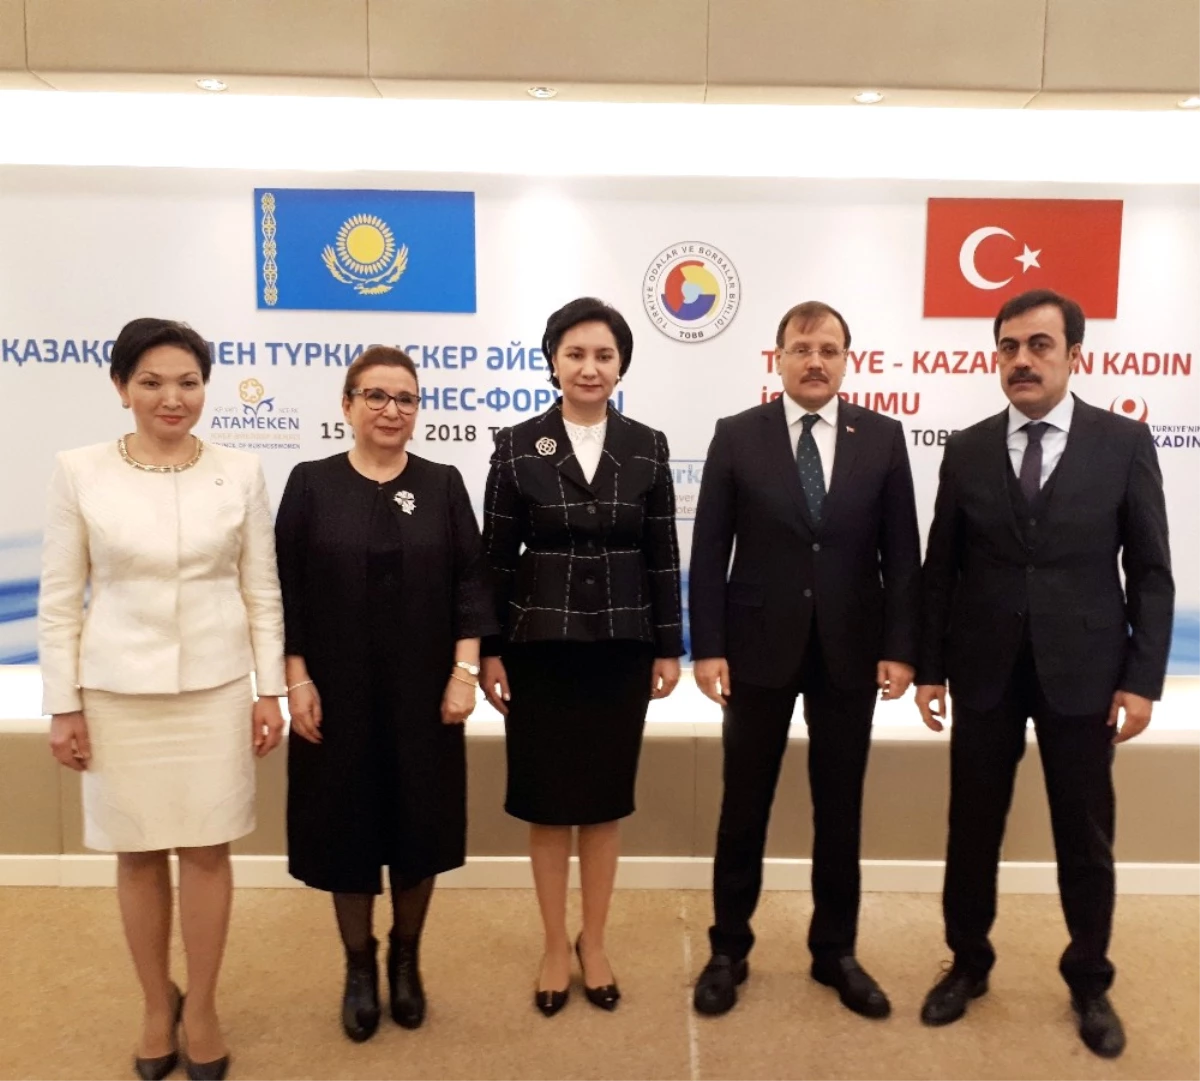 Başbakan Yardımcısı Çavuşoğlu: "Türk Tarihinde Kadının Yeri Ayrıdır"